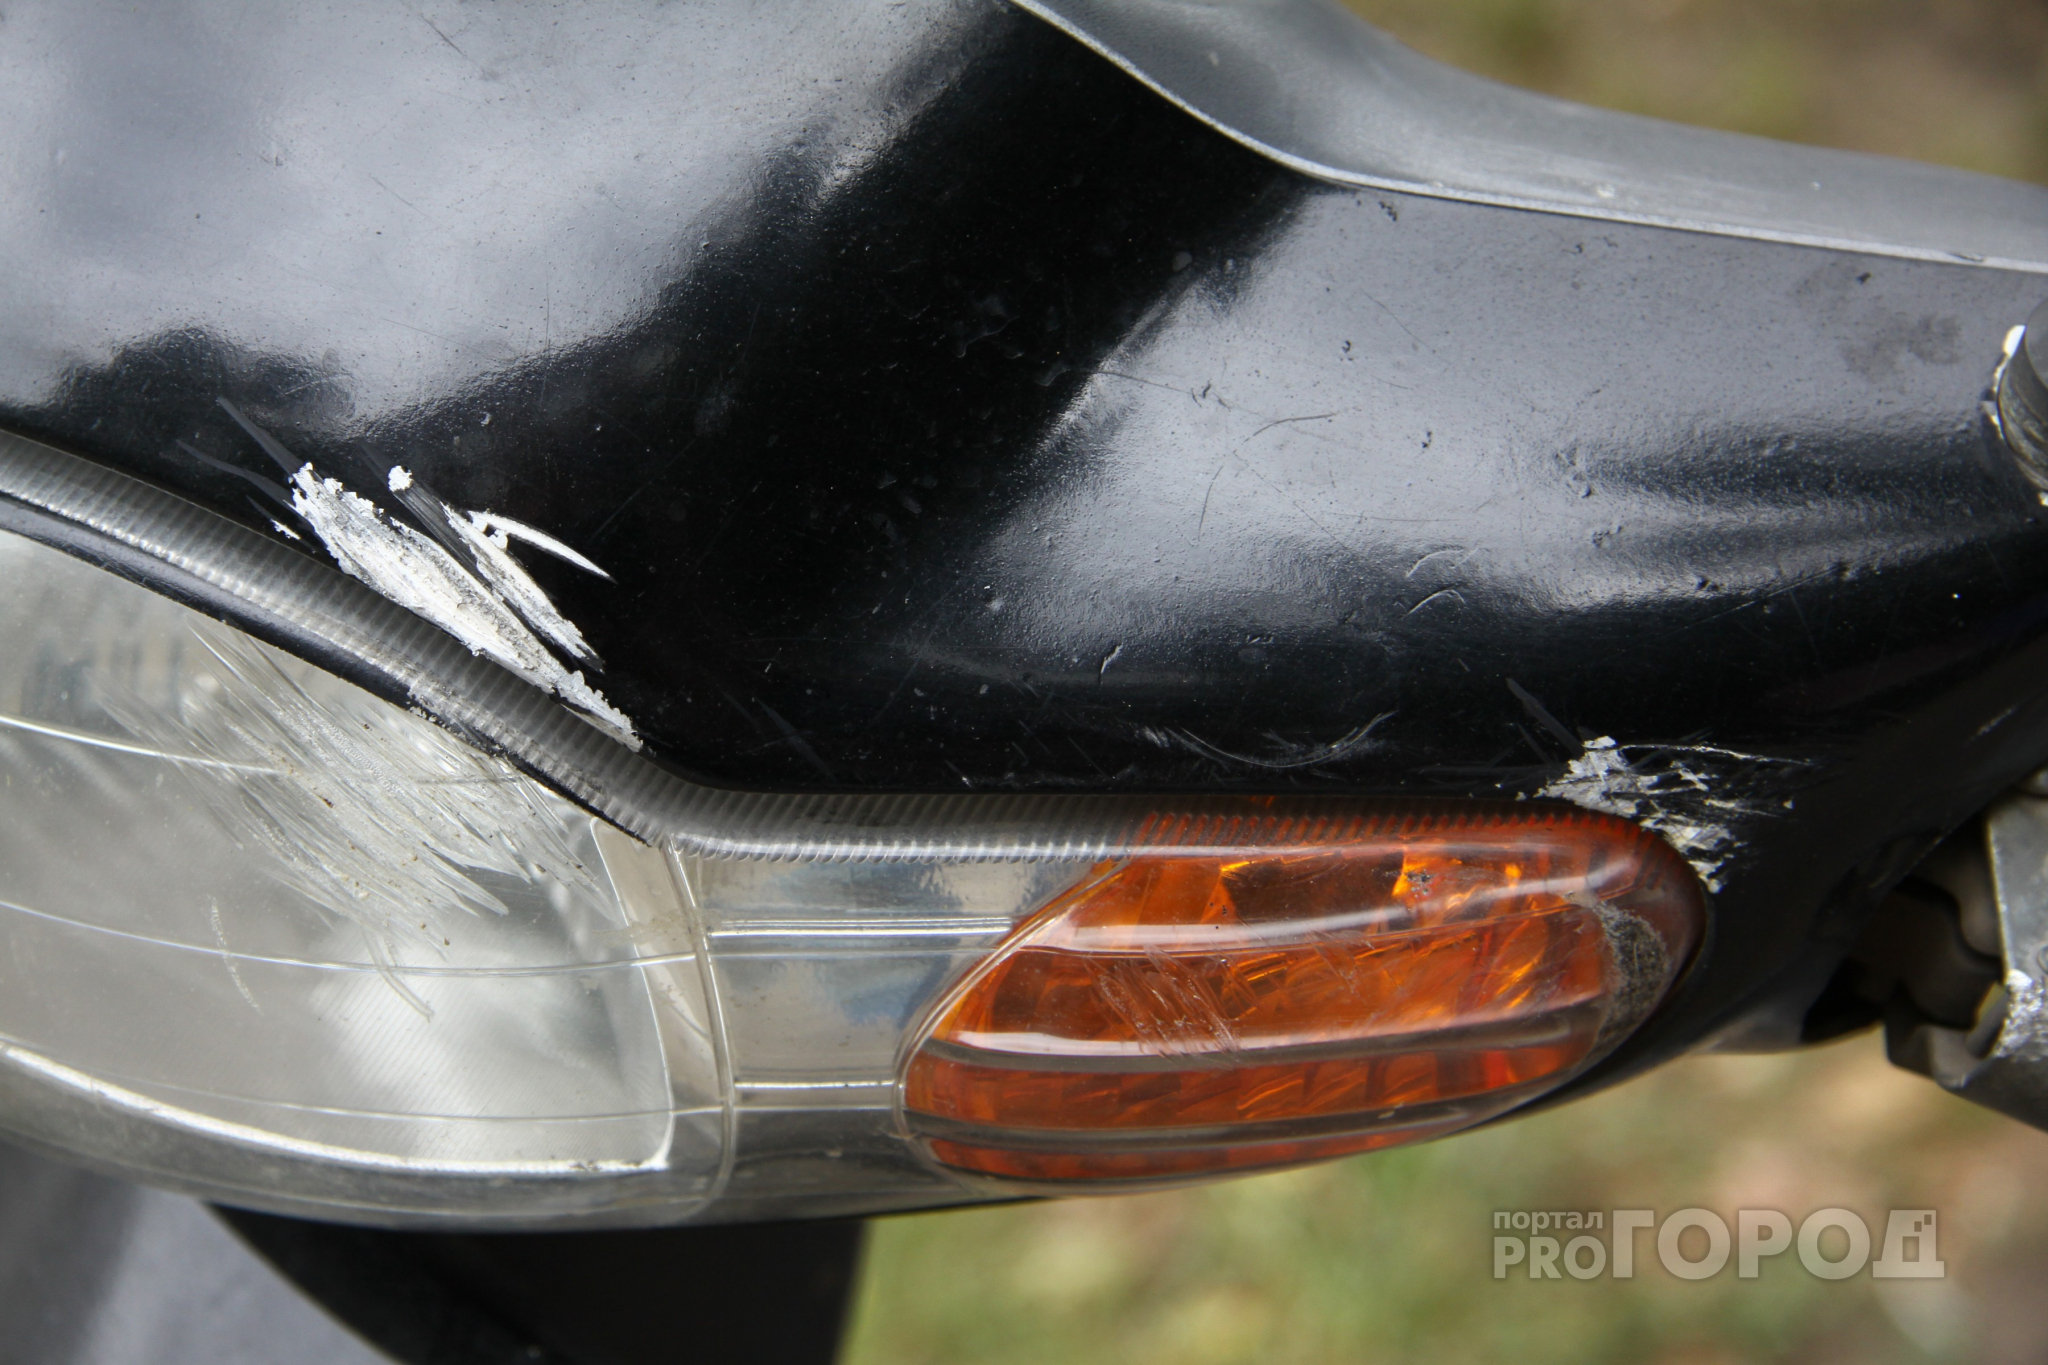 В Чувашии в ДТП пострадал бесправный водитель скутера